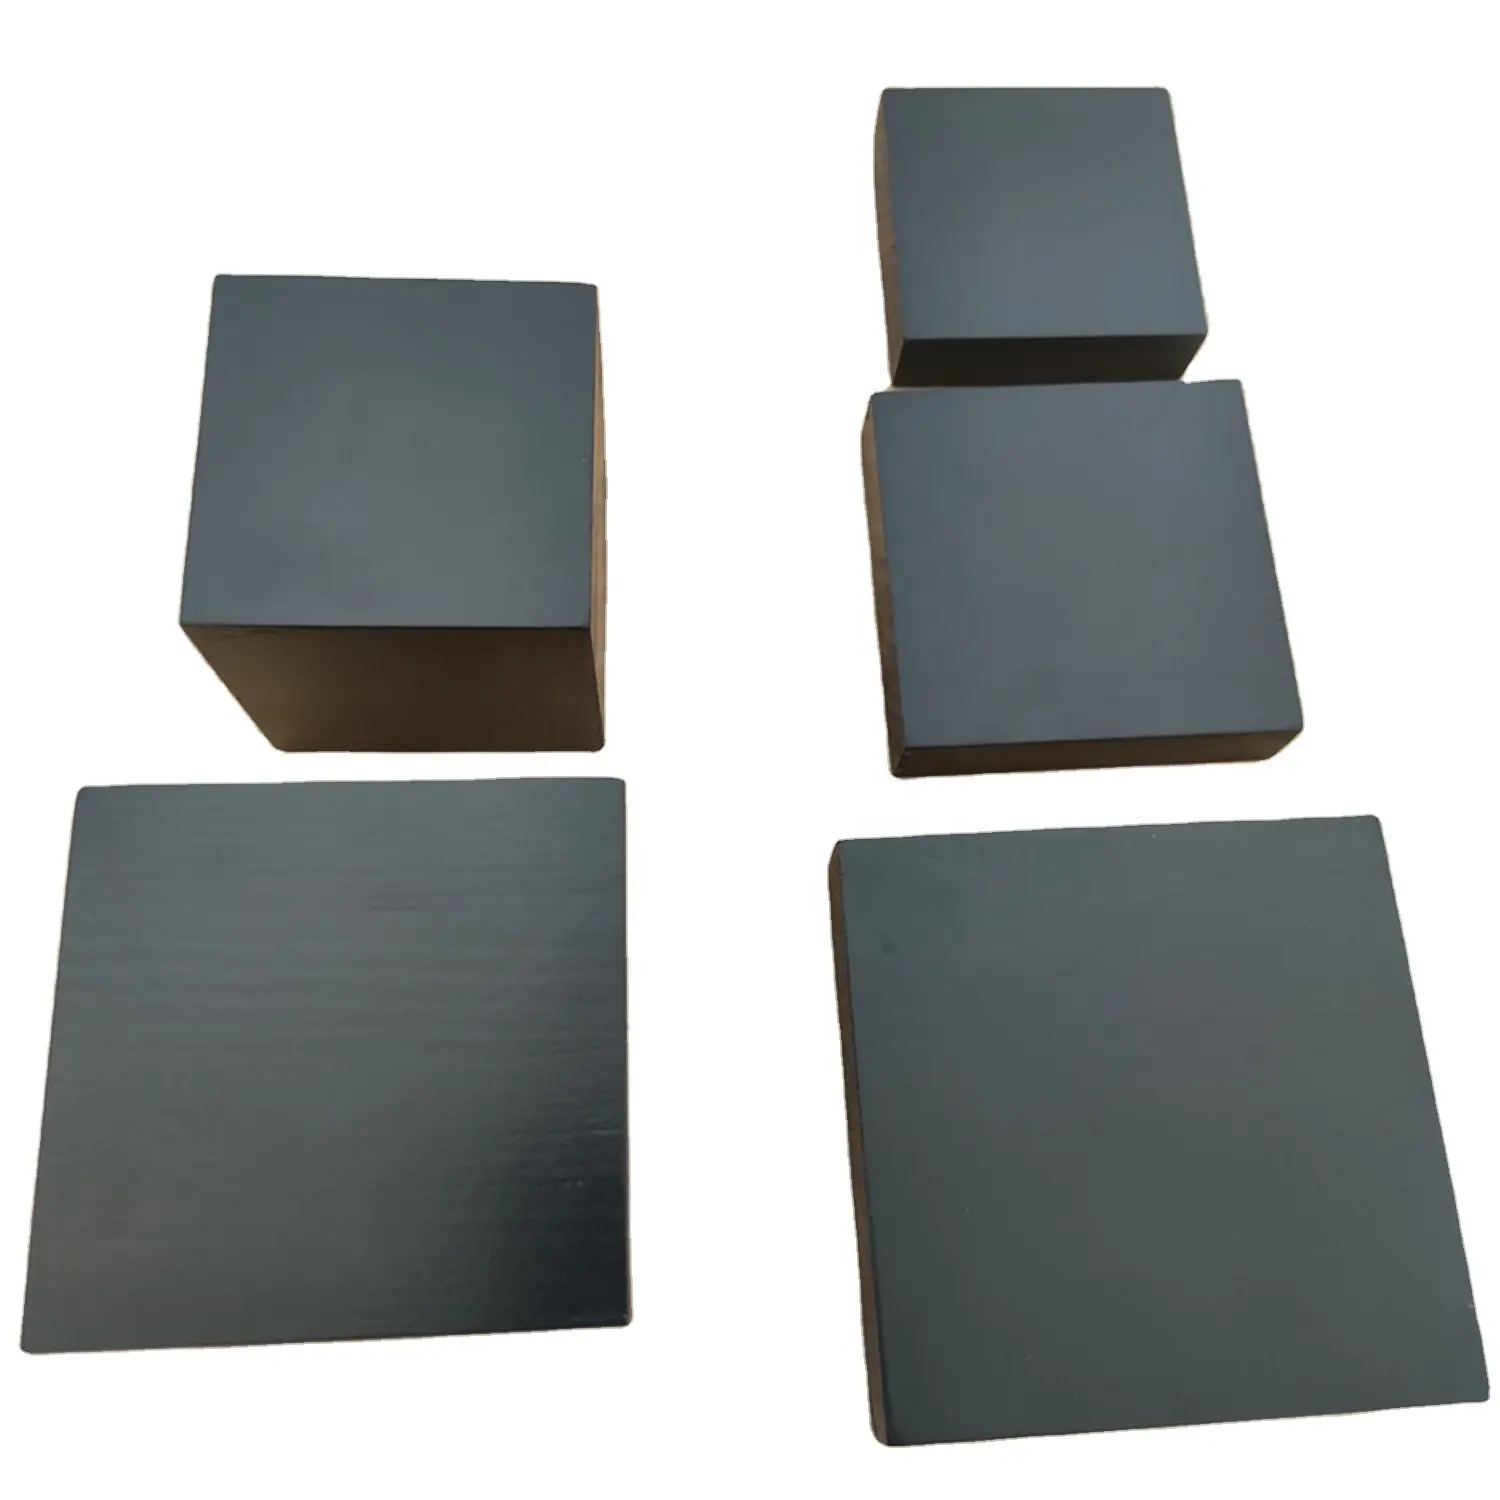 Cubos cuadrados de madera para decoración, base de madera negra personalizable